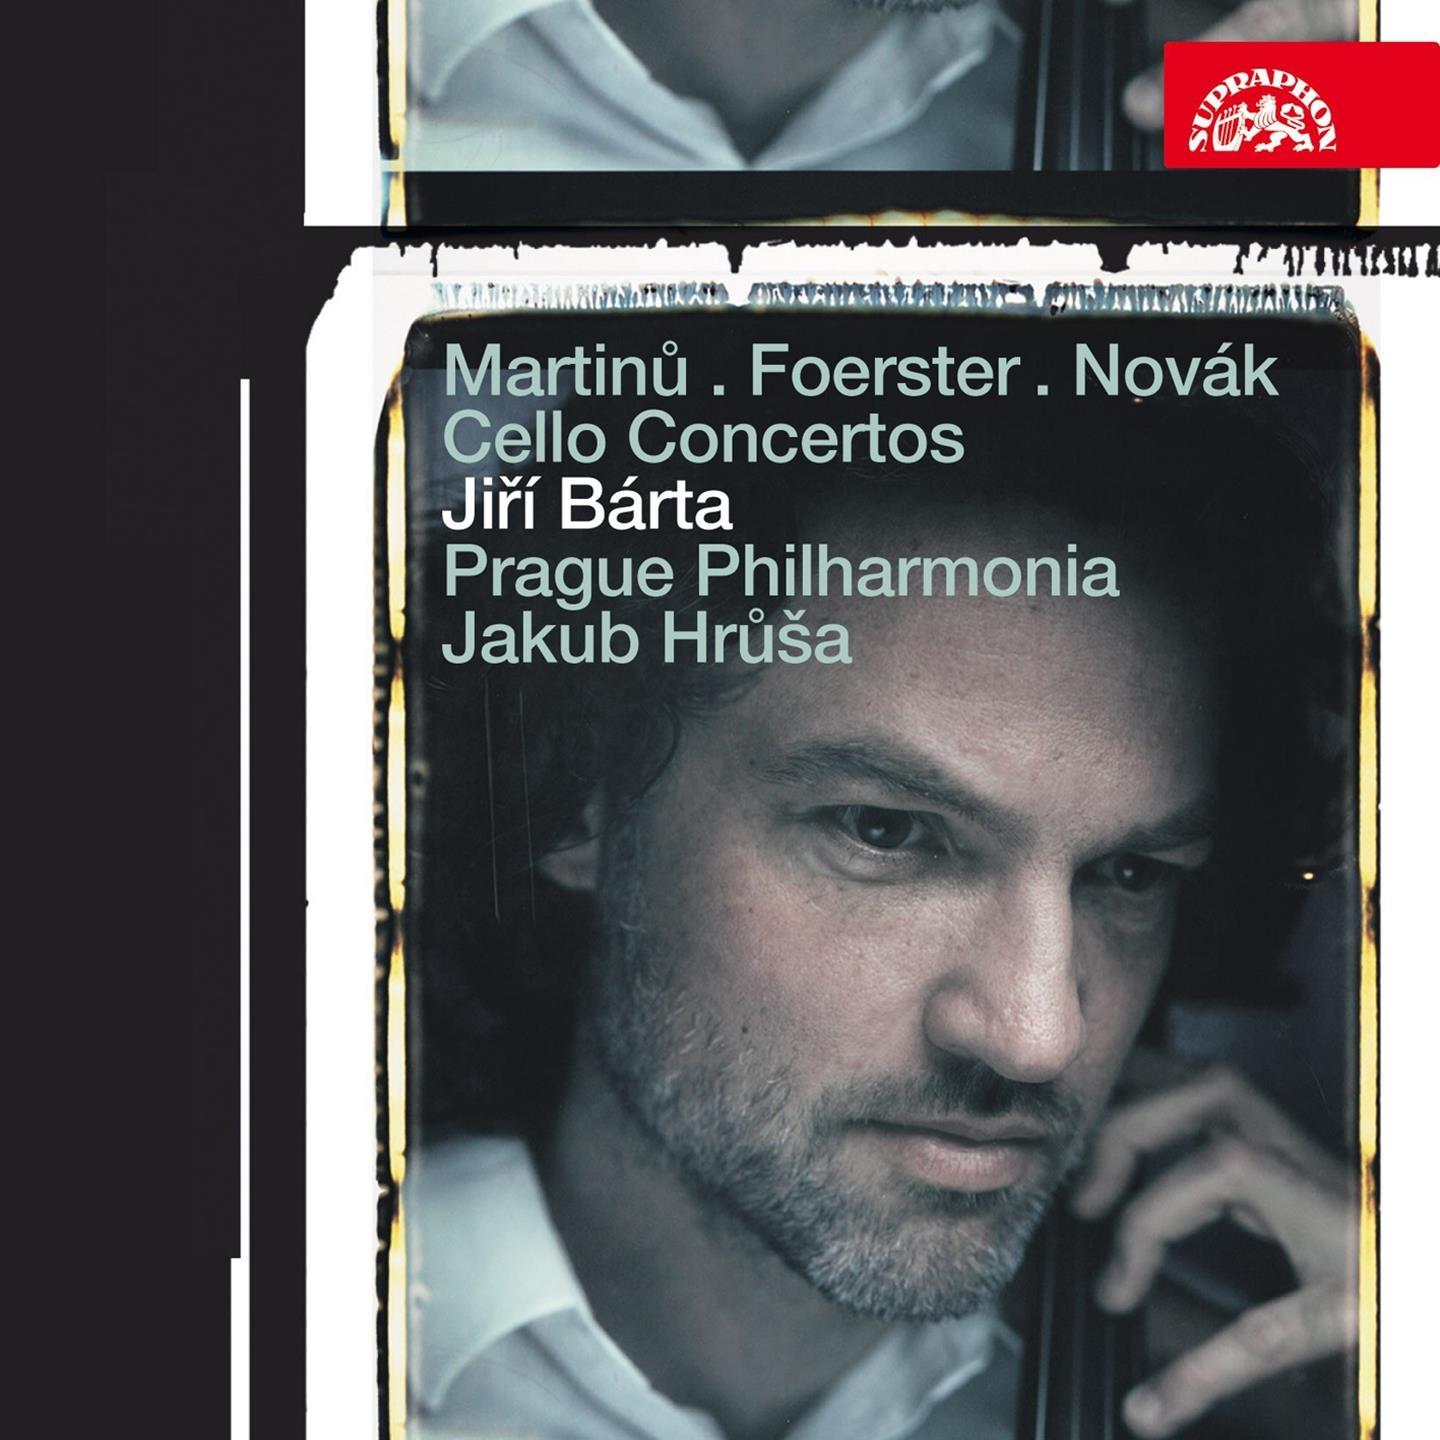 Martin, Foerster  Nova k: Cello Concertos